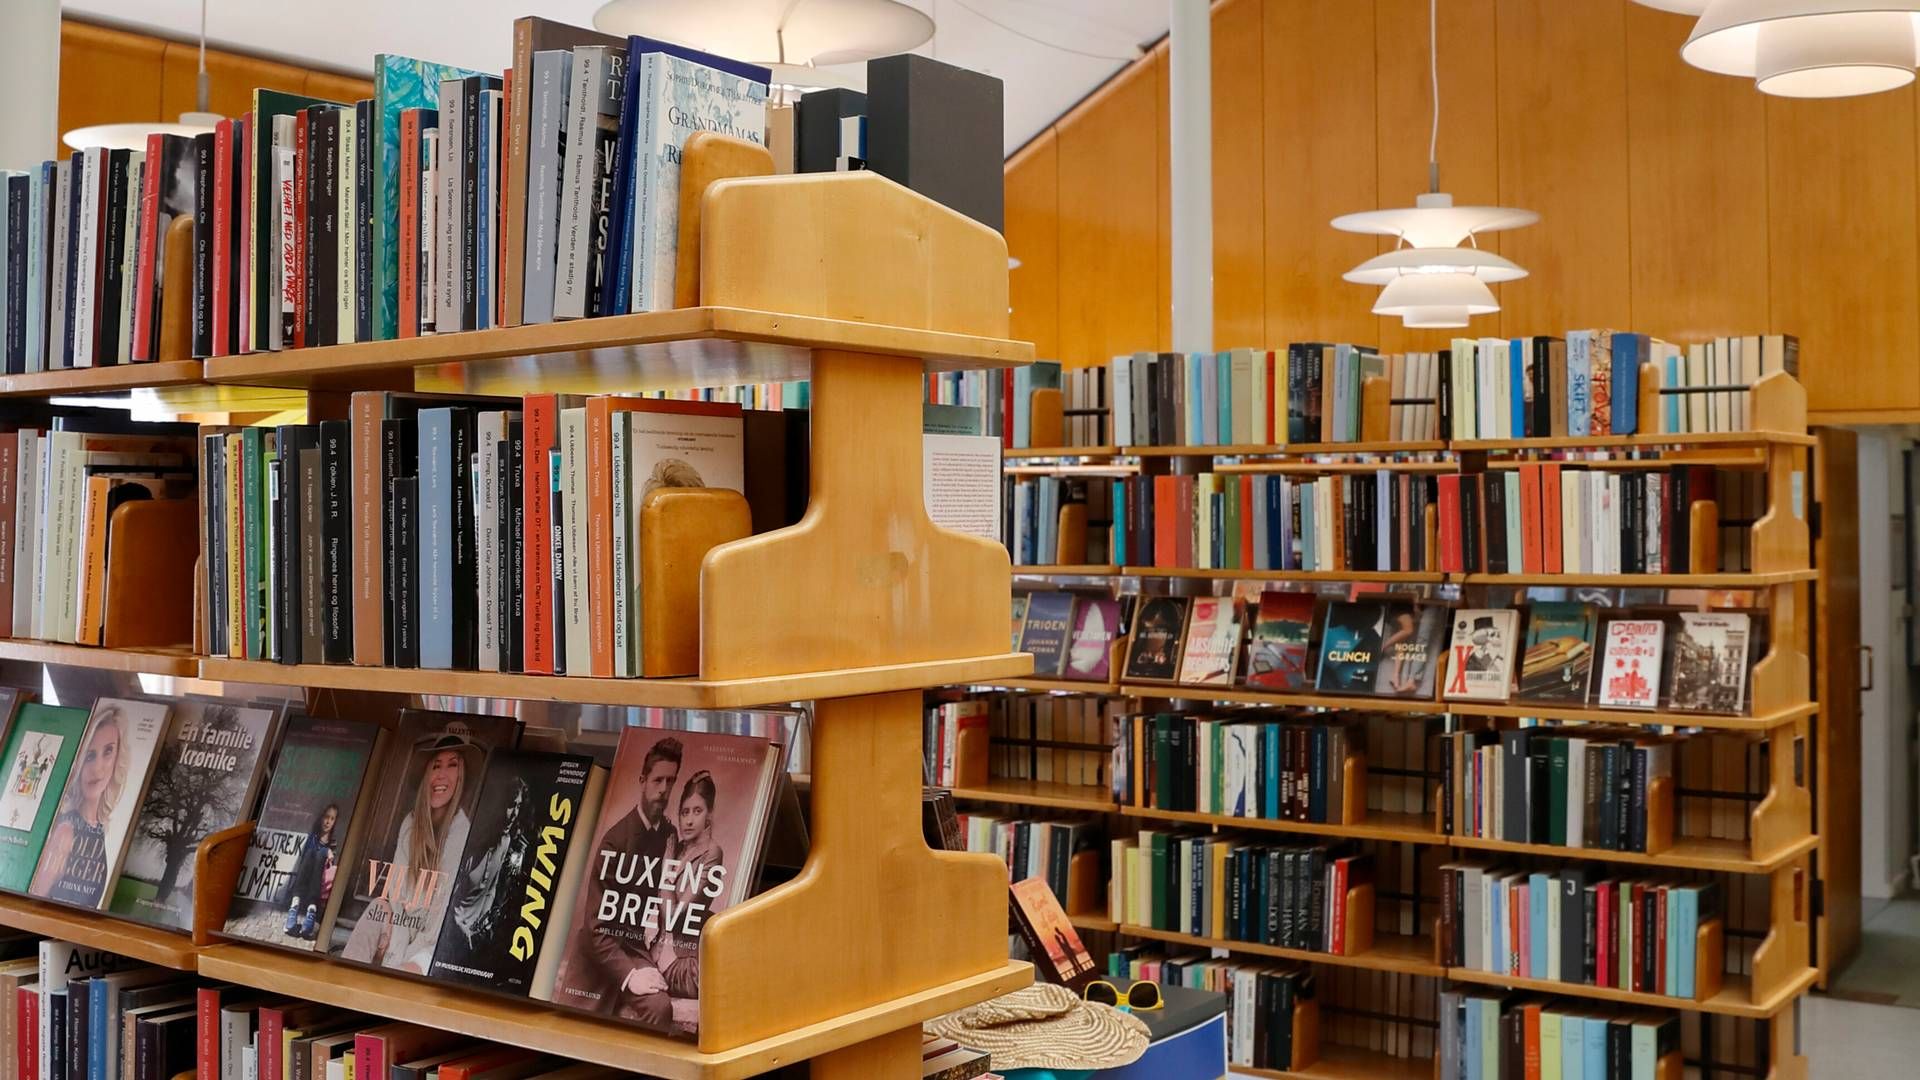 ”Det er afgørende for Københavns biblioteker, at der er en fornuftig balance mellem de private tilbud og det offentlige tilbud, og at de supplerer hinanden,” udtaler Jakob Heide Petersen, som er chef for Københavns Biblioteker. | Foto: Jens Dresling/Ritzau Scanpix